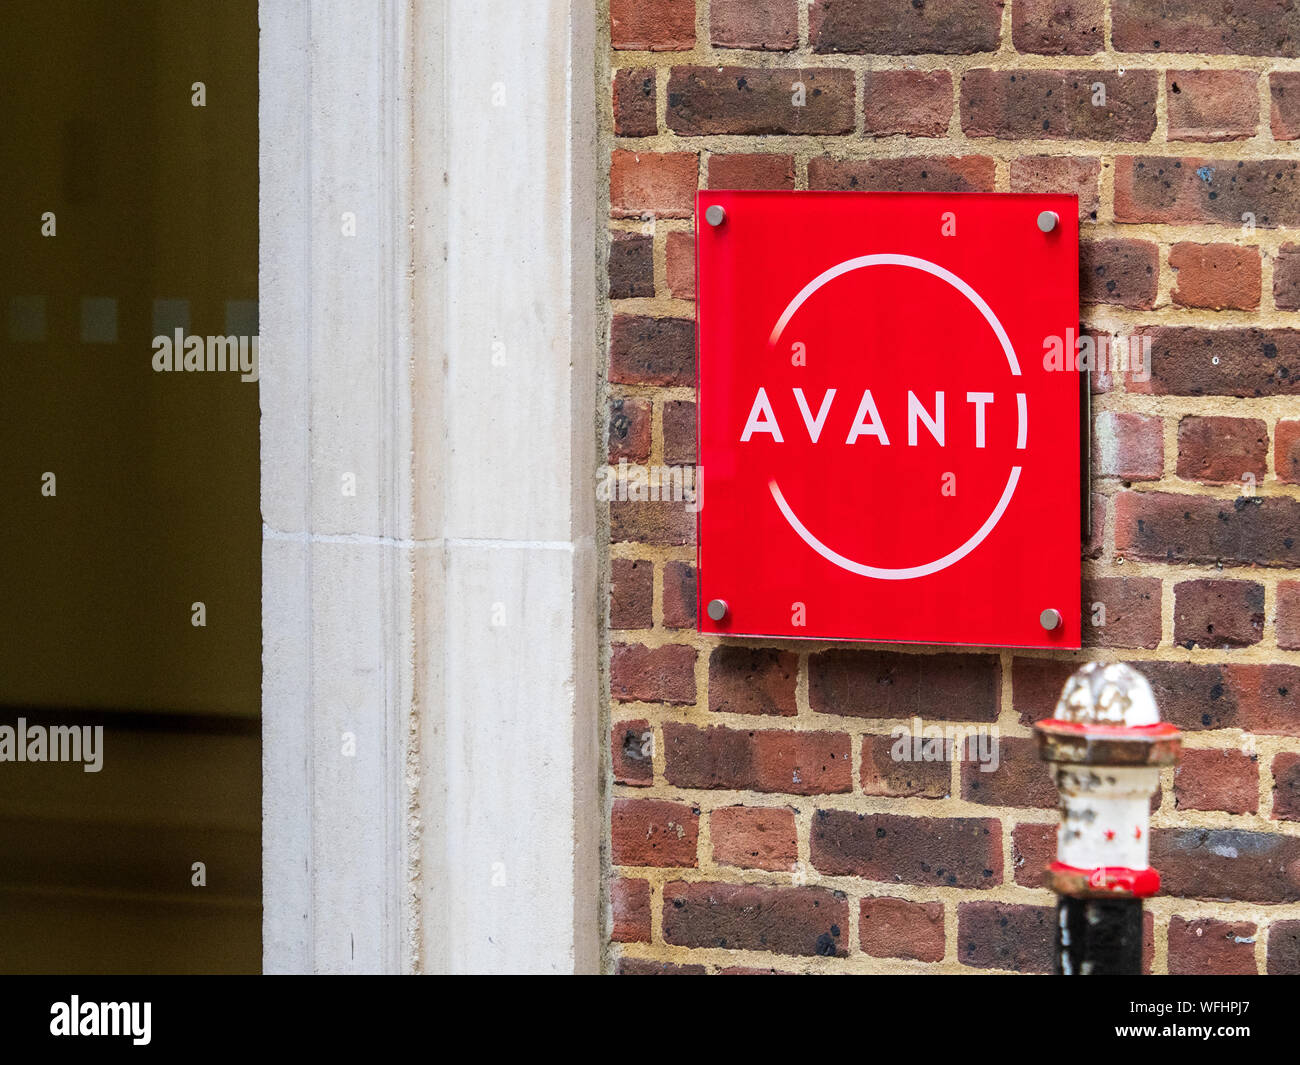 Avanti Communications Group plc Siège social siège, au centre de Londres. Avanti est un fournisseur de technologie par satellite agile et sûr dans la zone EMEA Banque D'Images